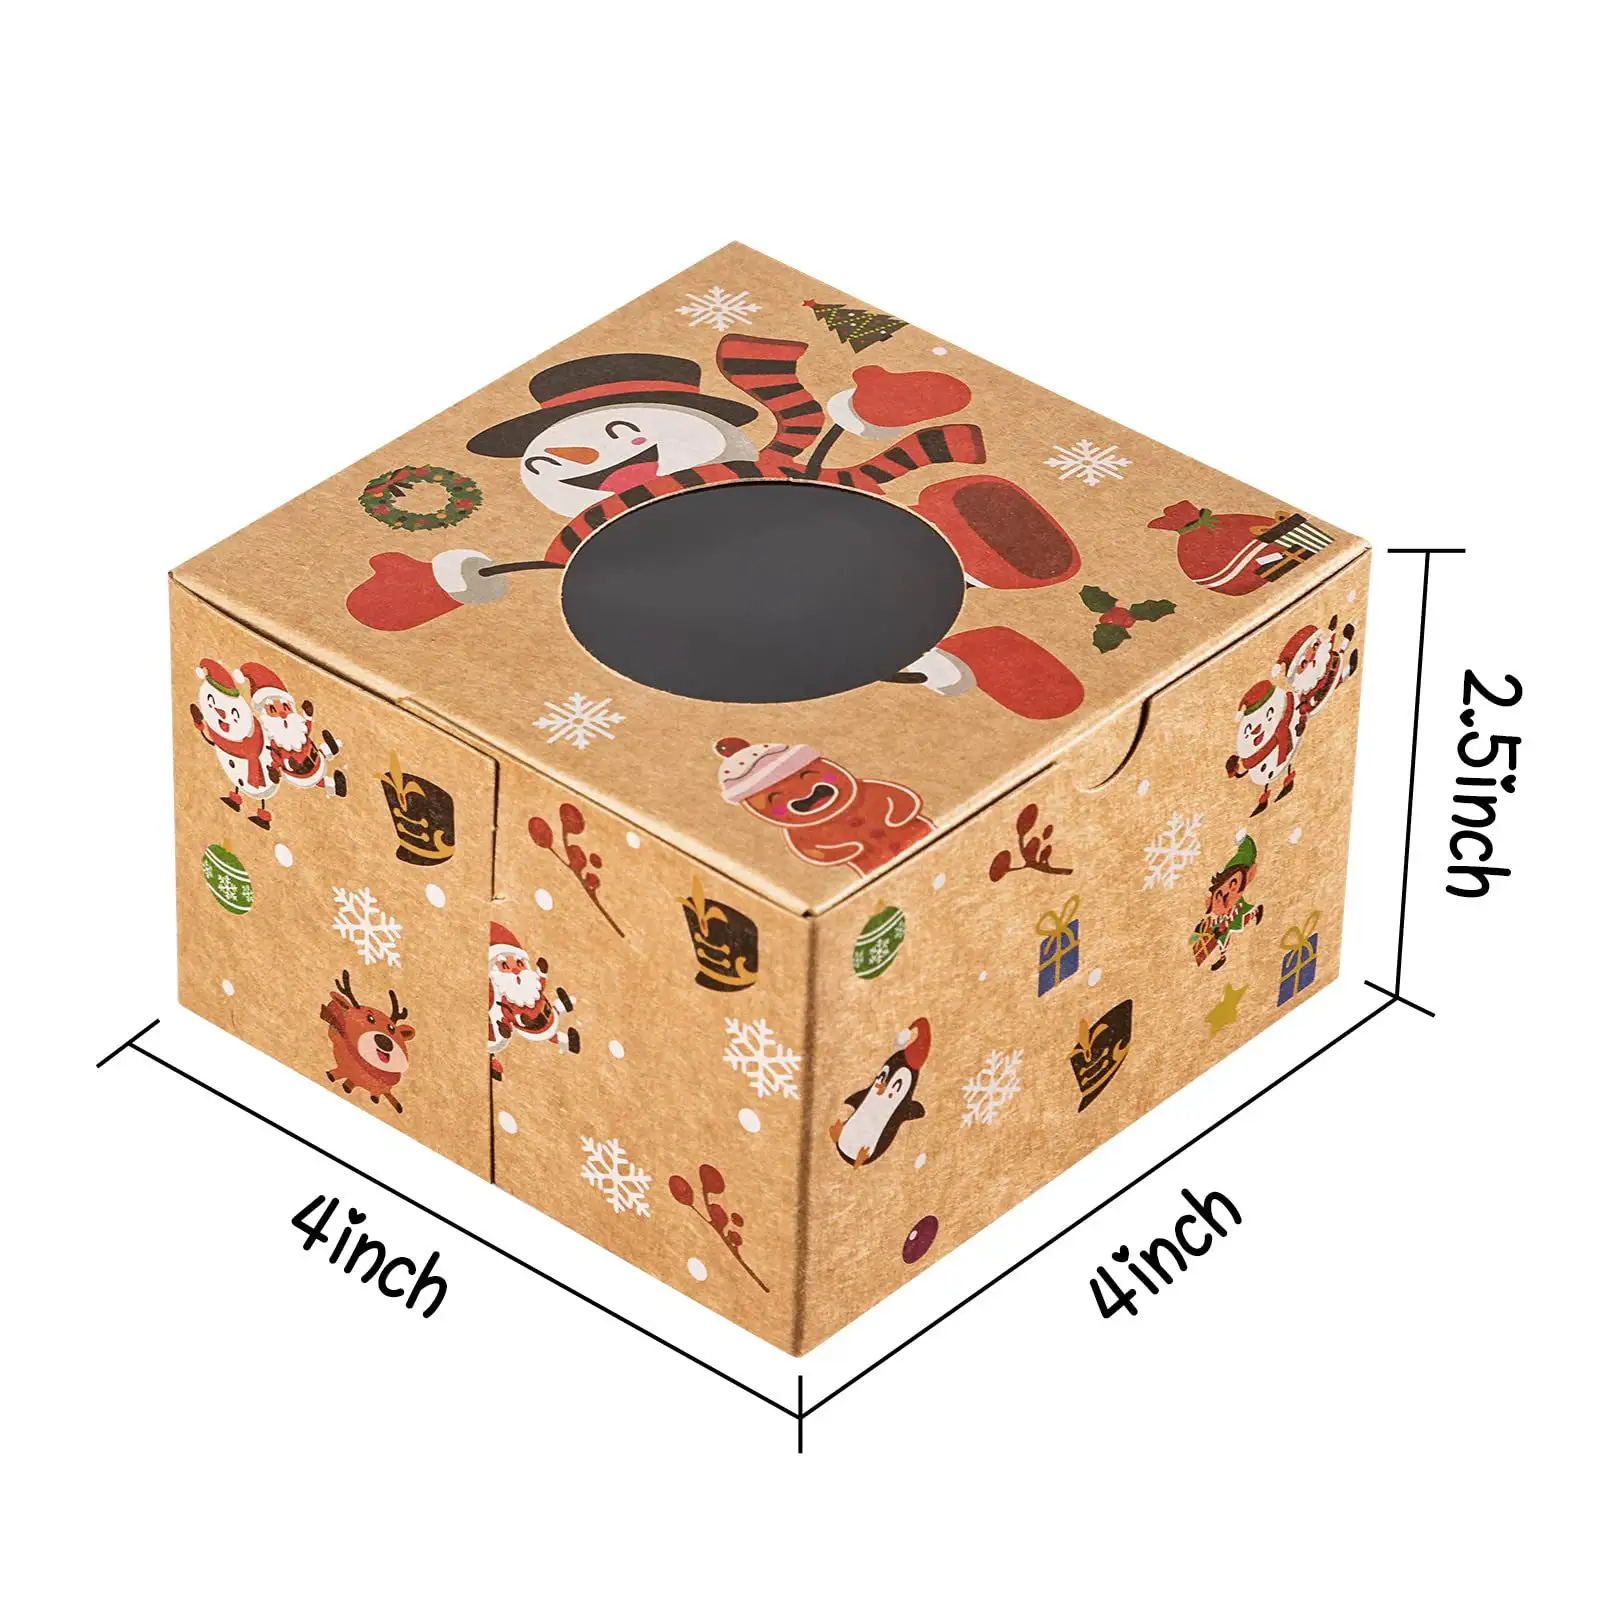 ウィンドウギフト包装ボックス付きブラウントリートボックスを与えるギフト用のベストセラークリスマスクッキーボックス